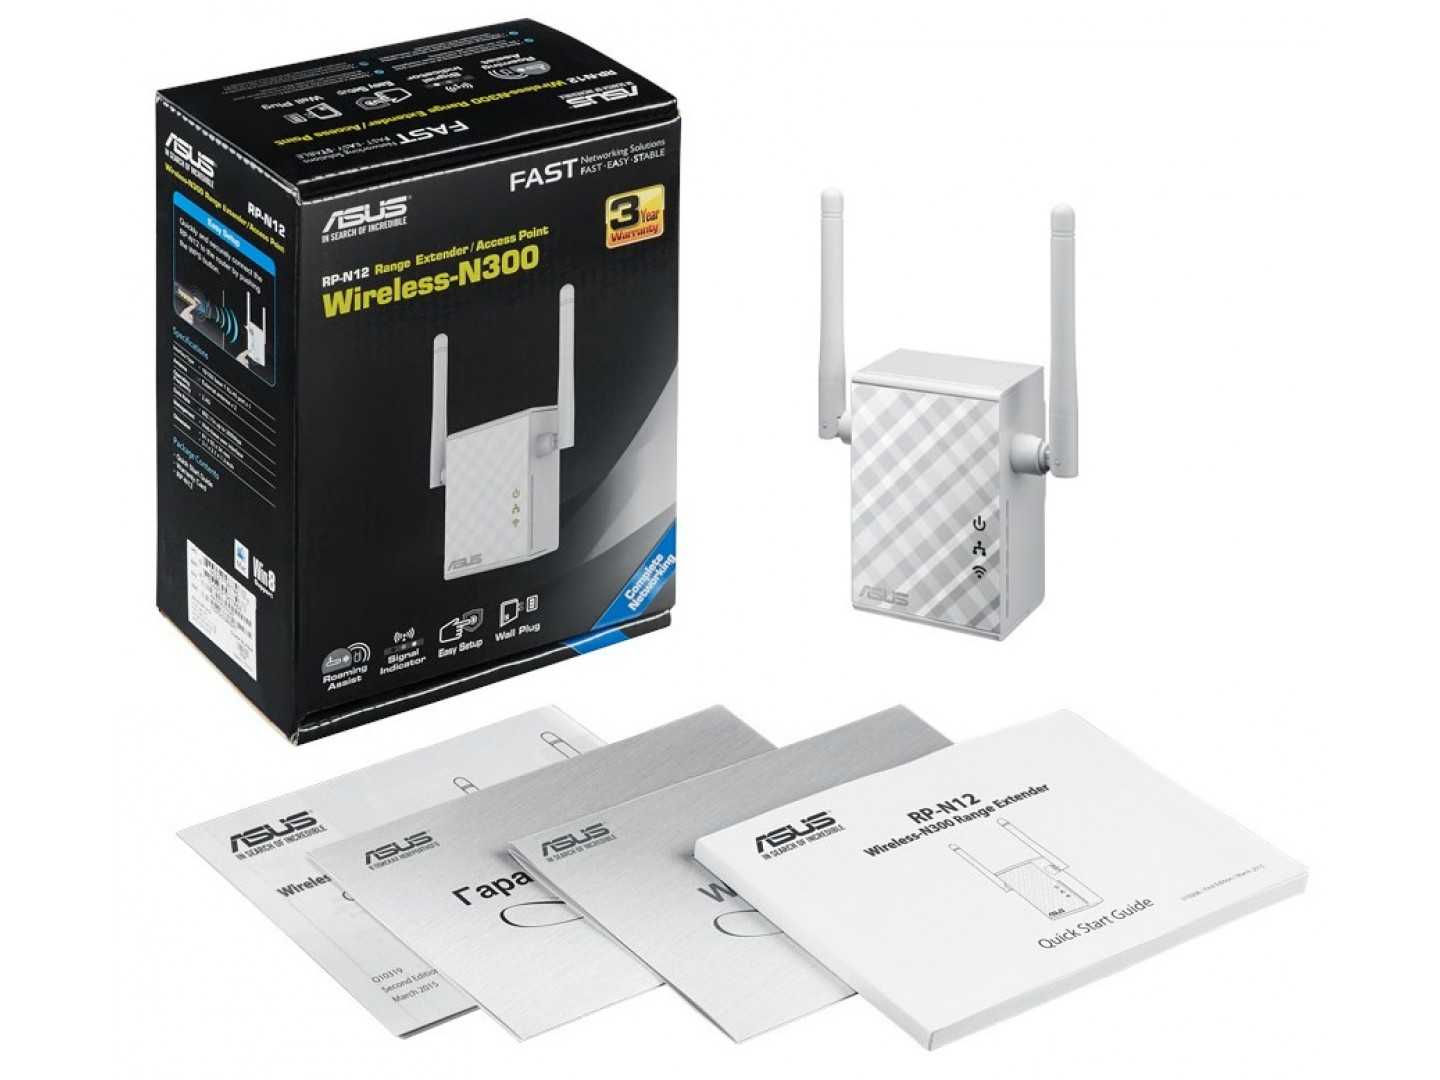 Усилитель wifi (репитер) asus rp-n14 — купить, цена и характеристики, отзывы